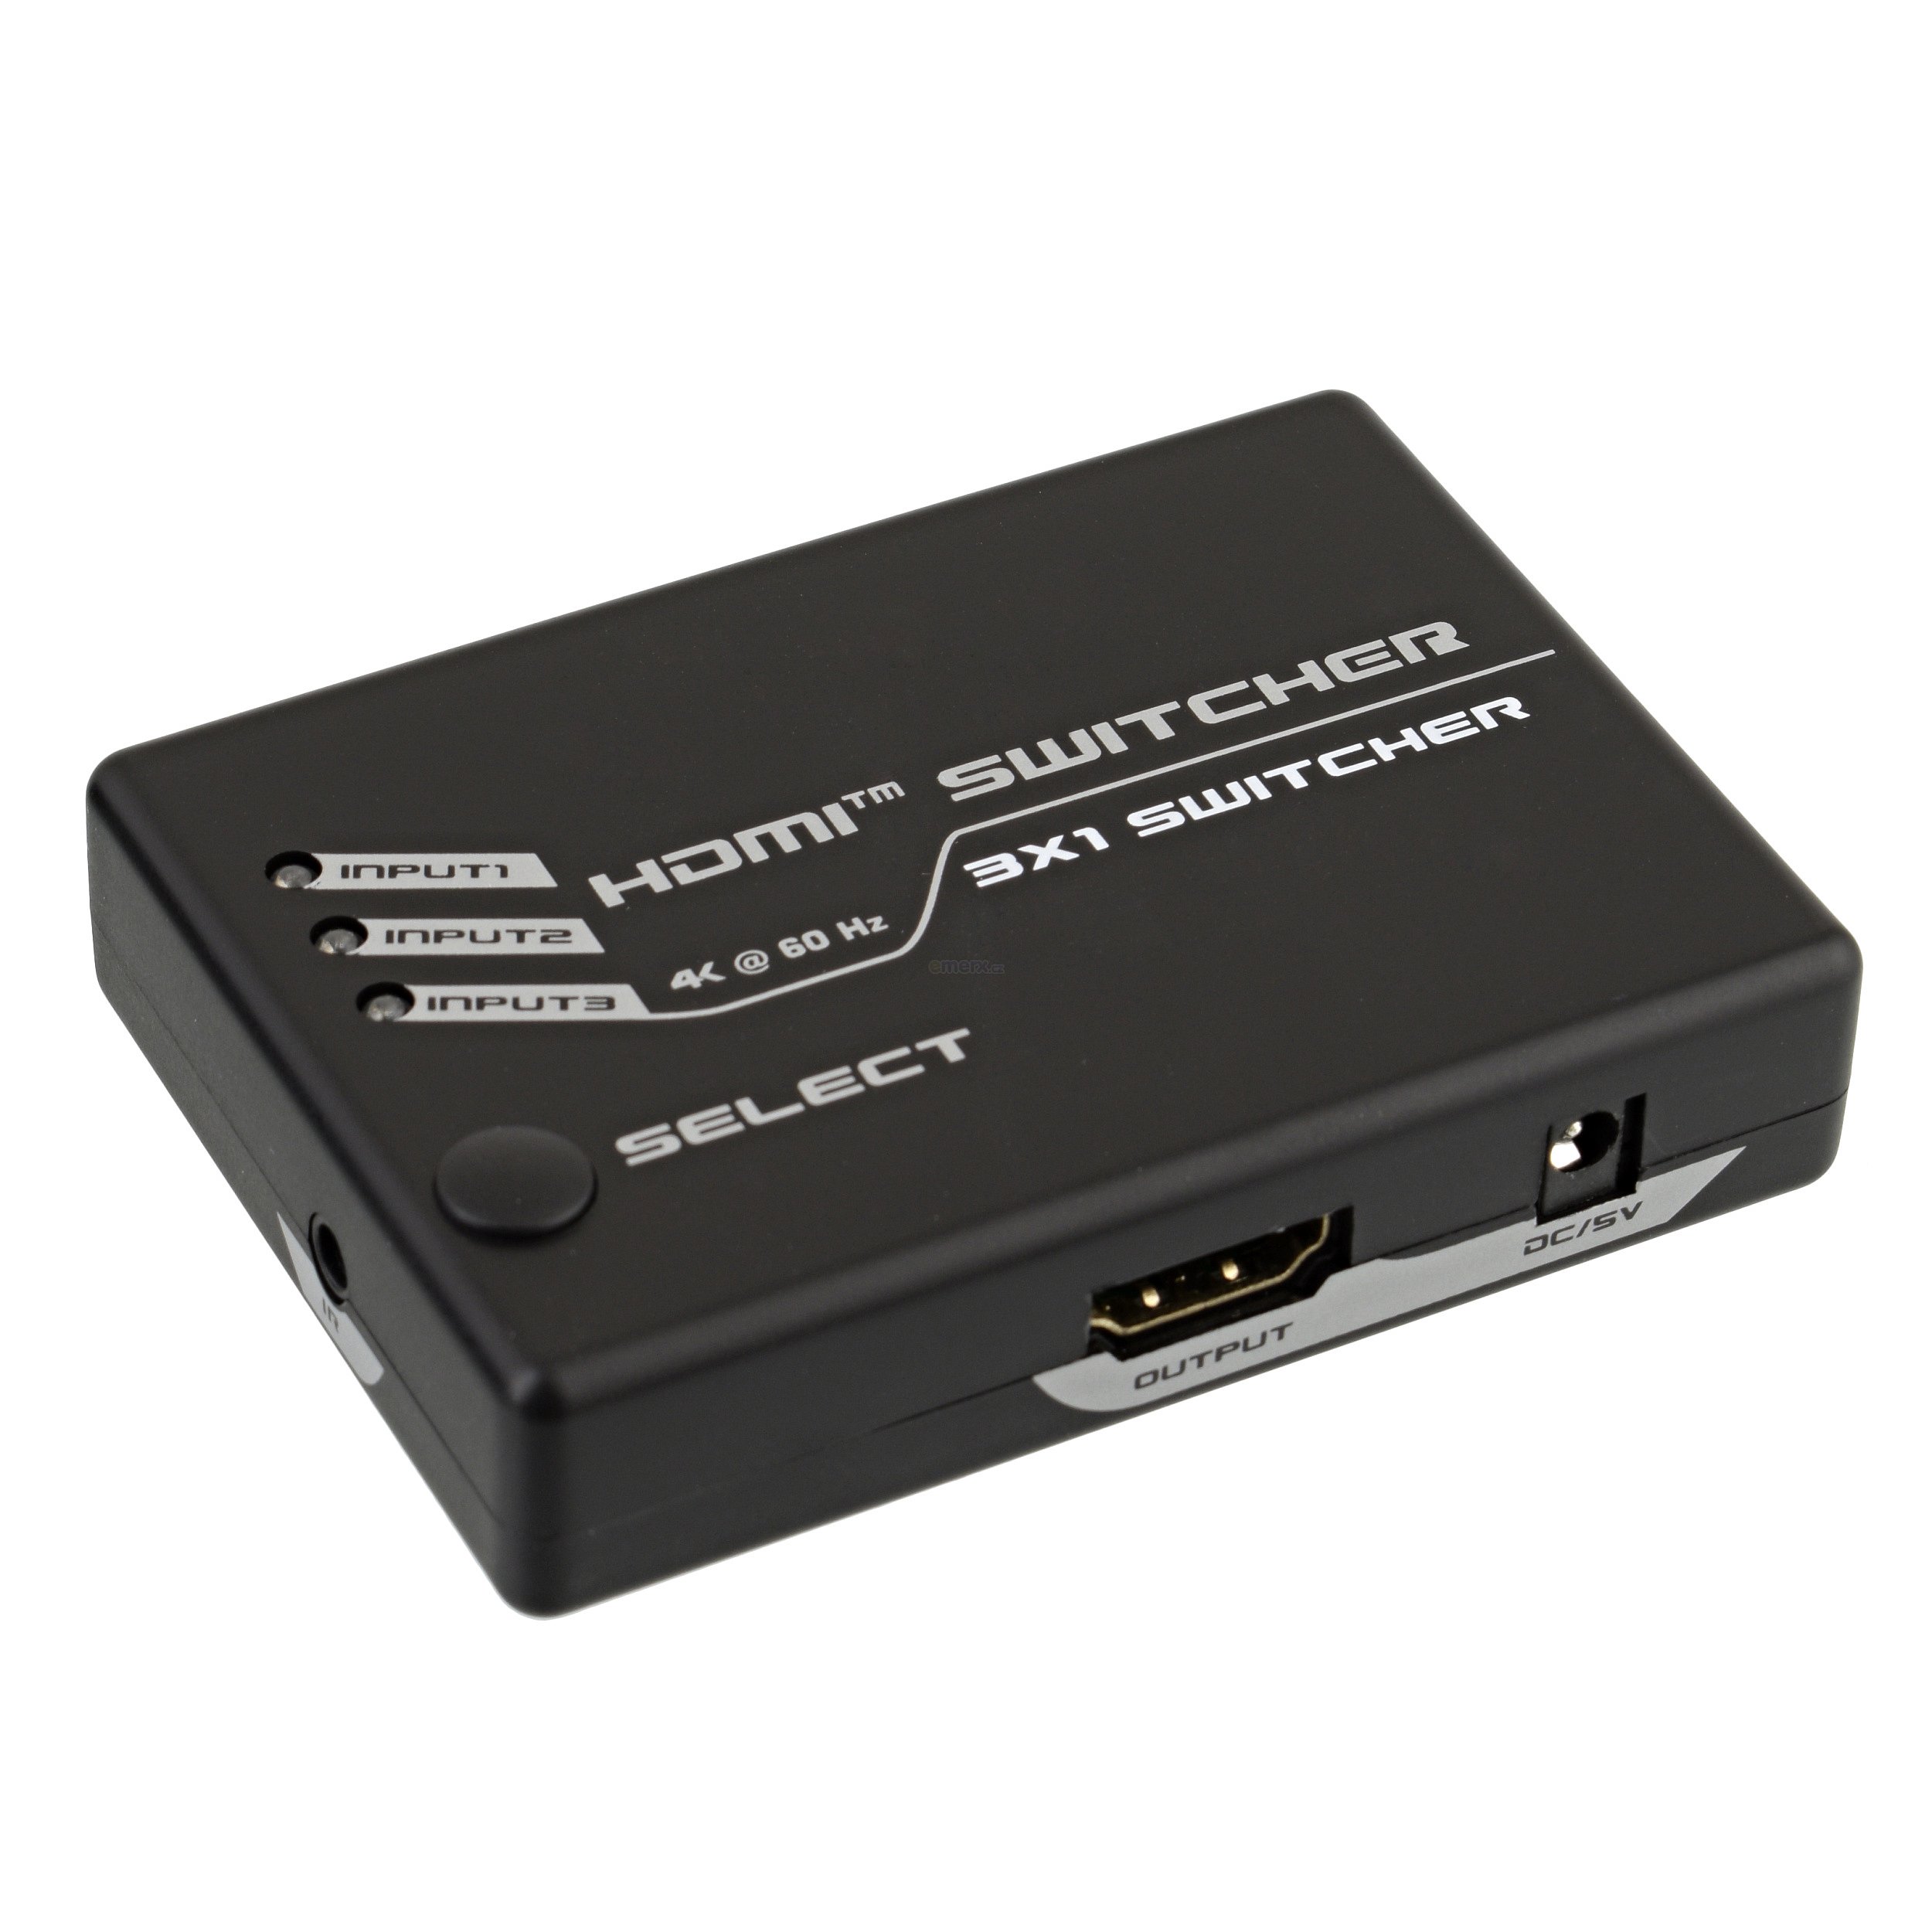 HDMI 2.0 přepínač 3x1 s dálkovým ovládáním (2PET0301S)